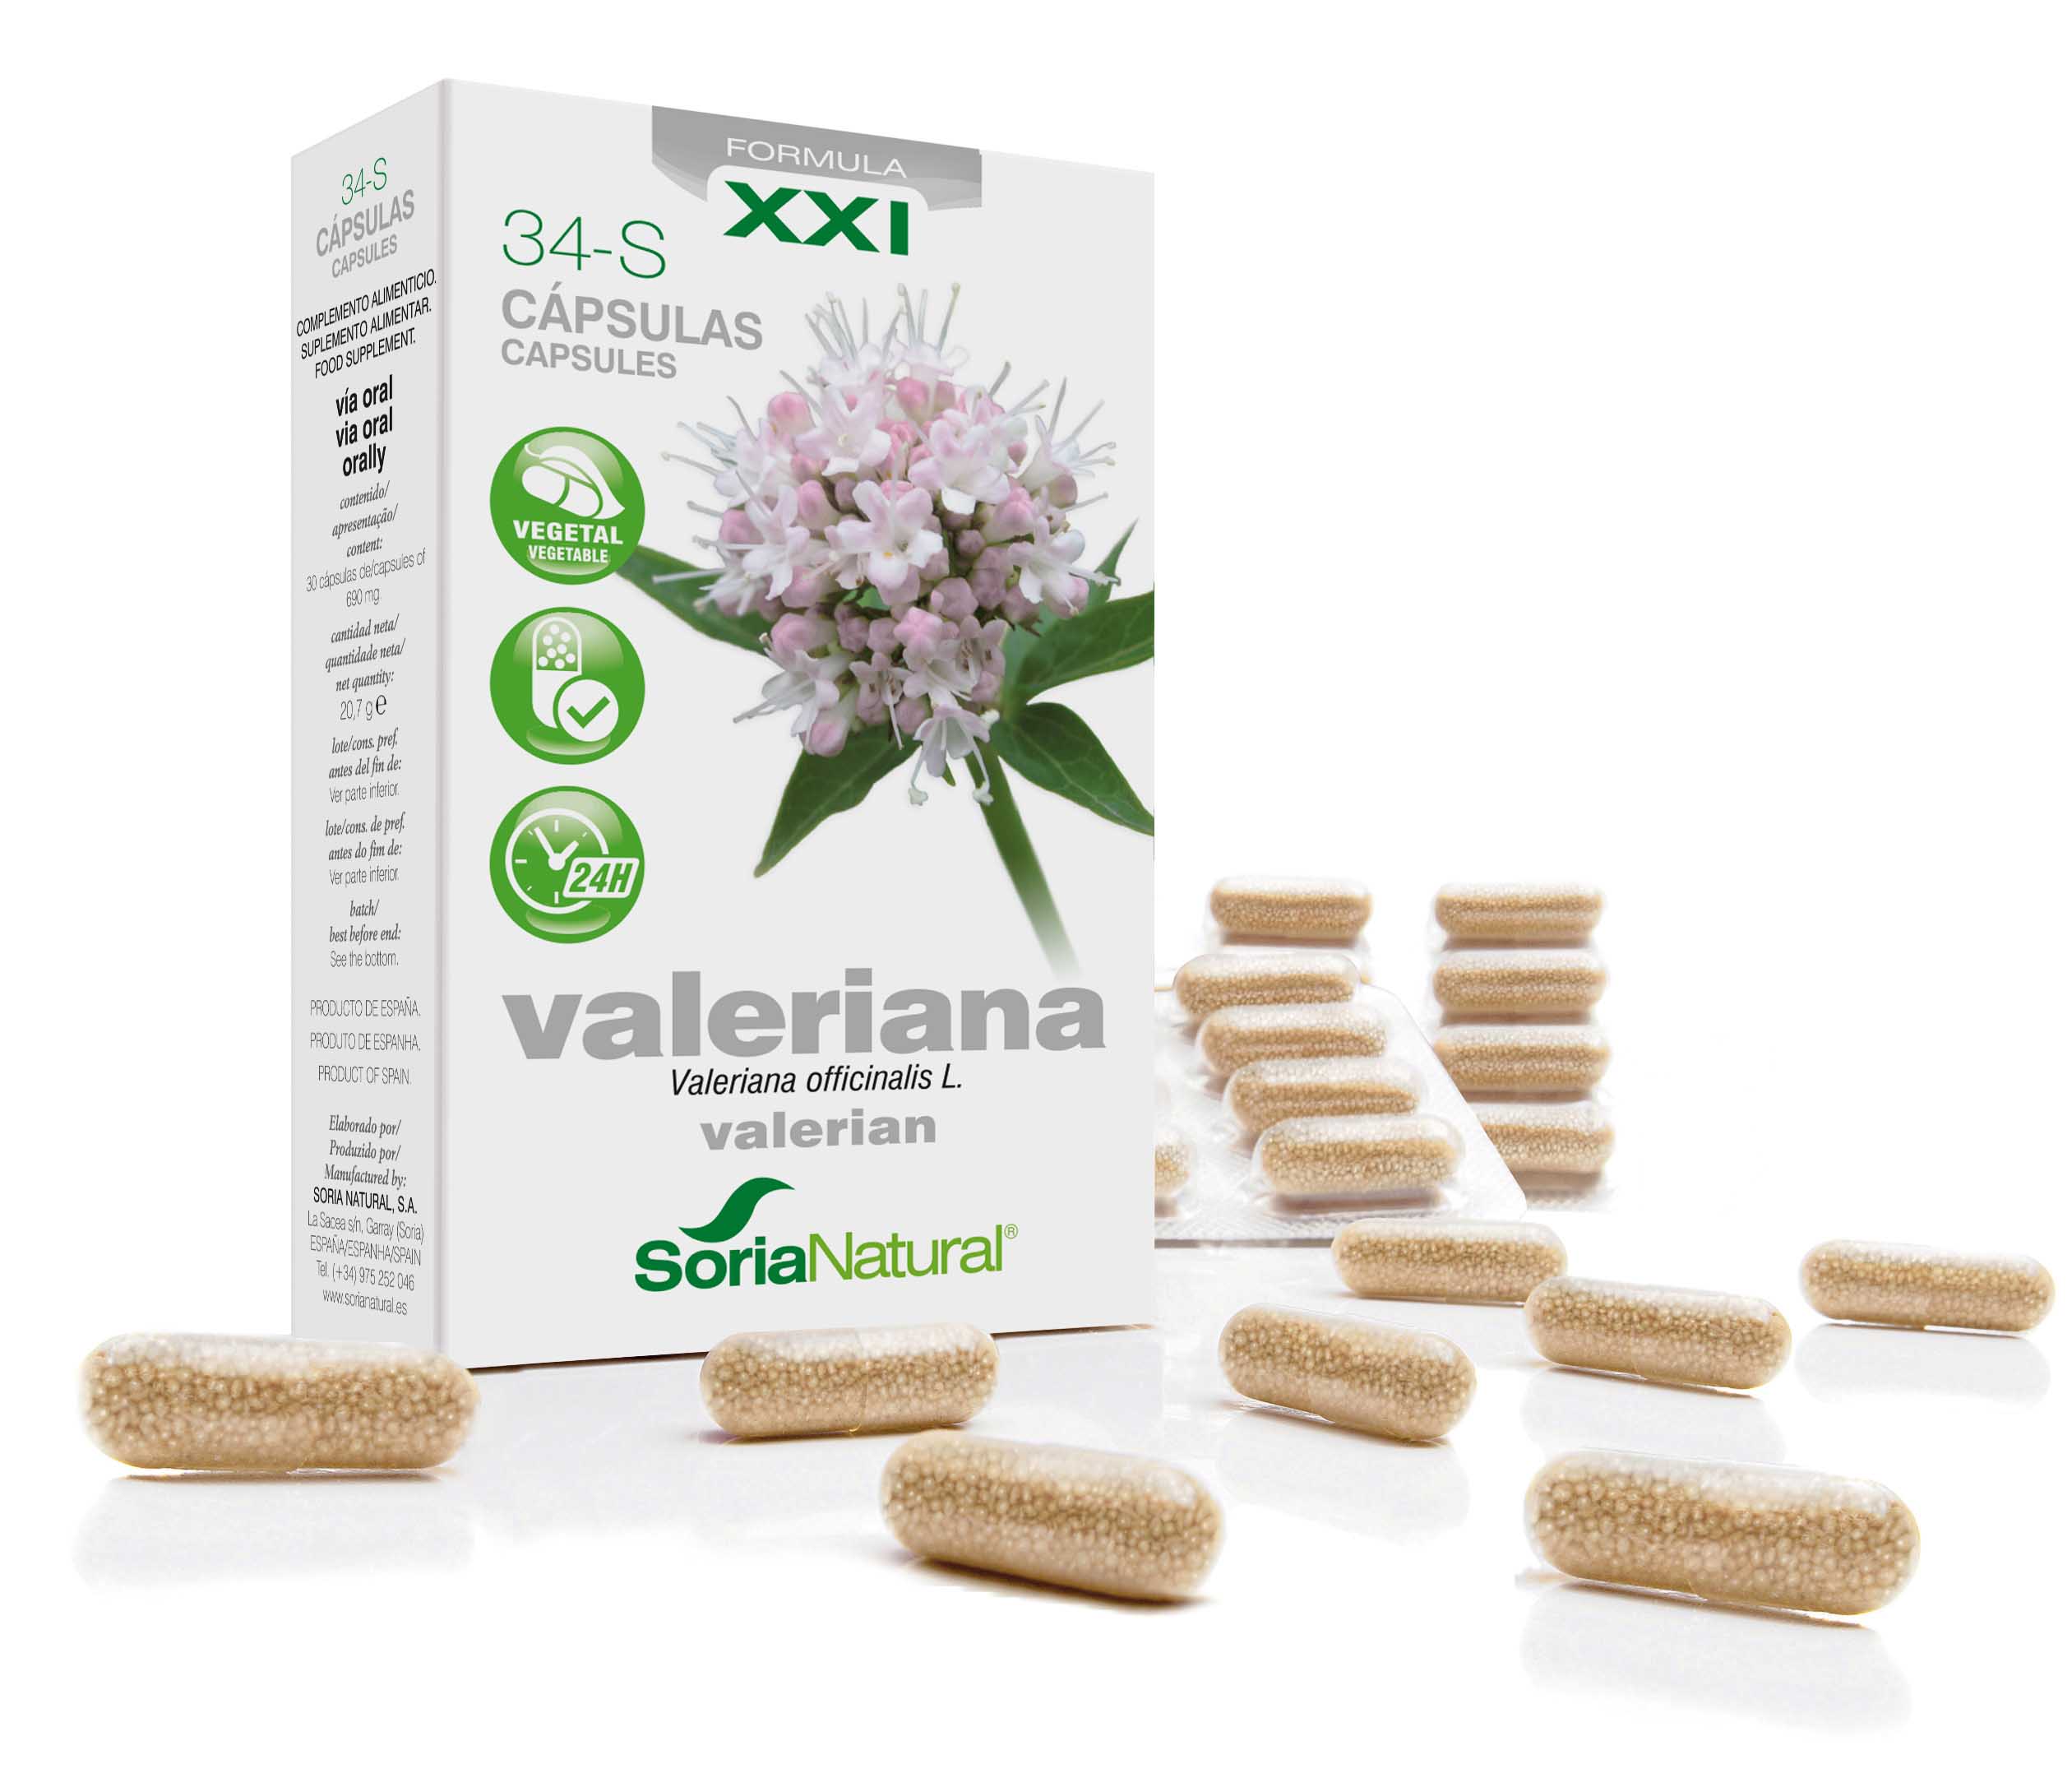 34-S Valeriana XXI: valériane 300 mg